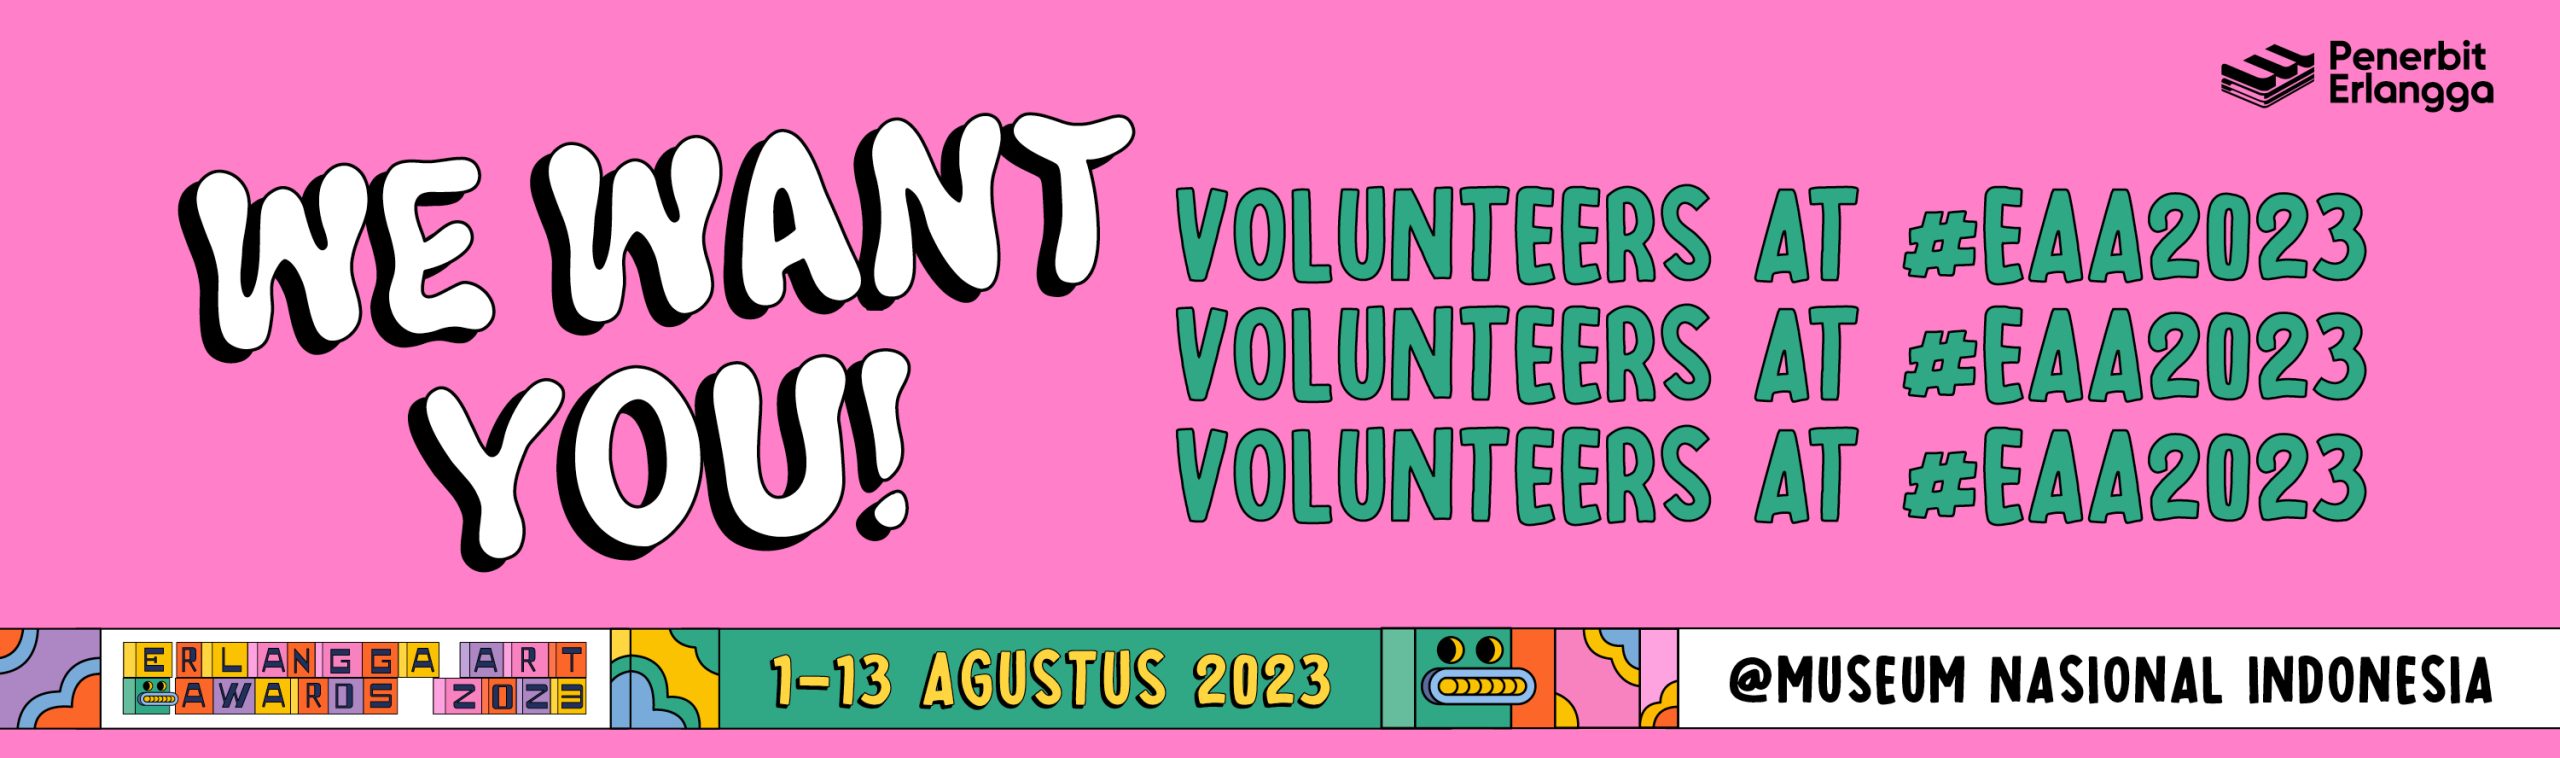 banner volunteer 2023